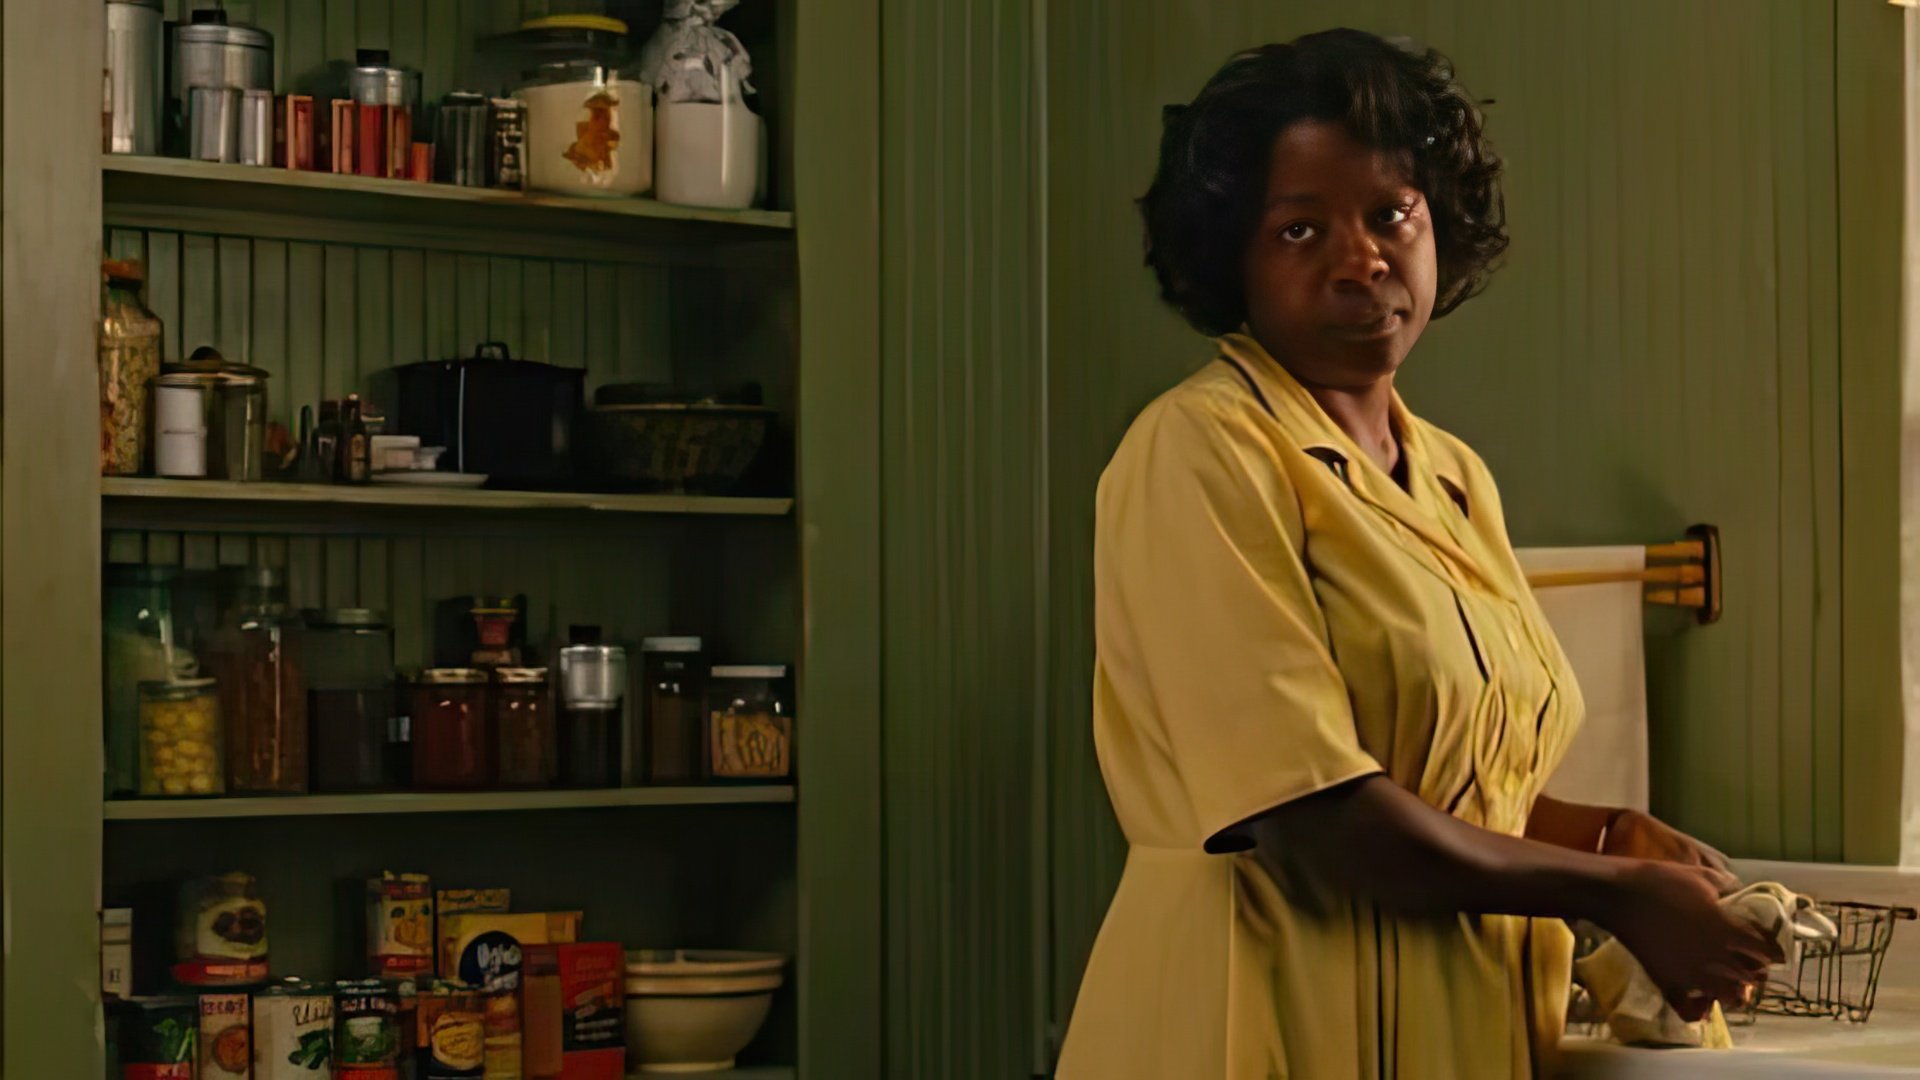 Viola Davis in the movie “The Help”